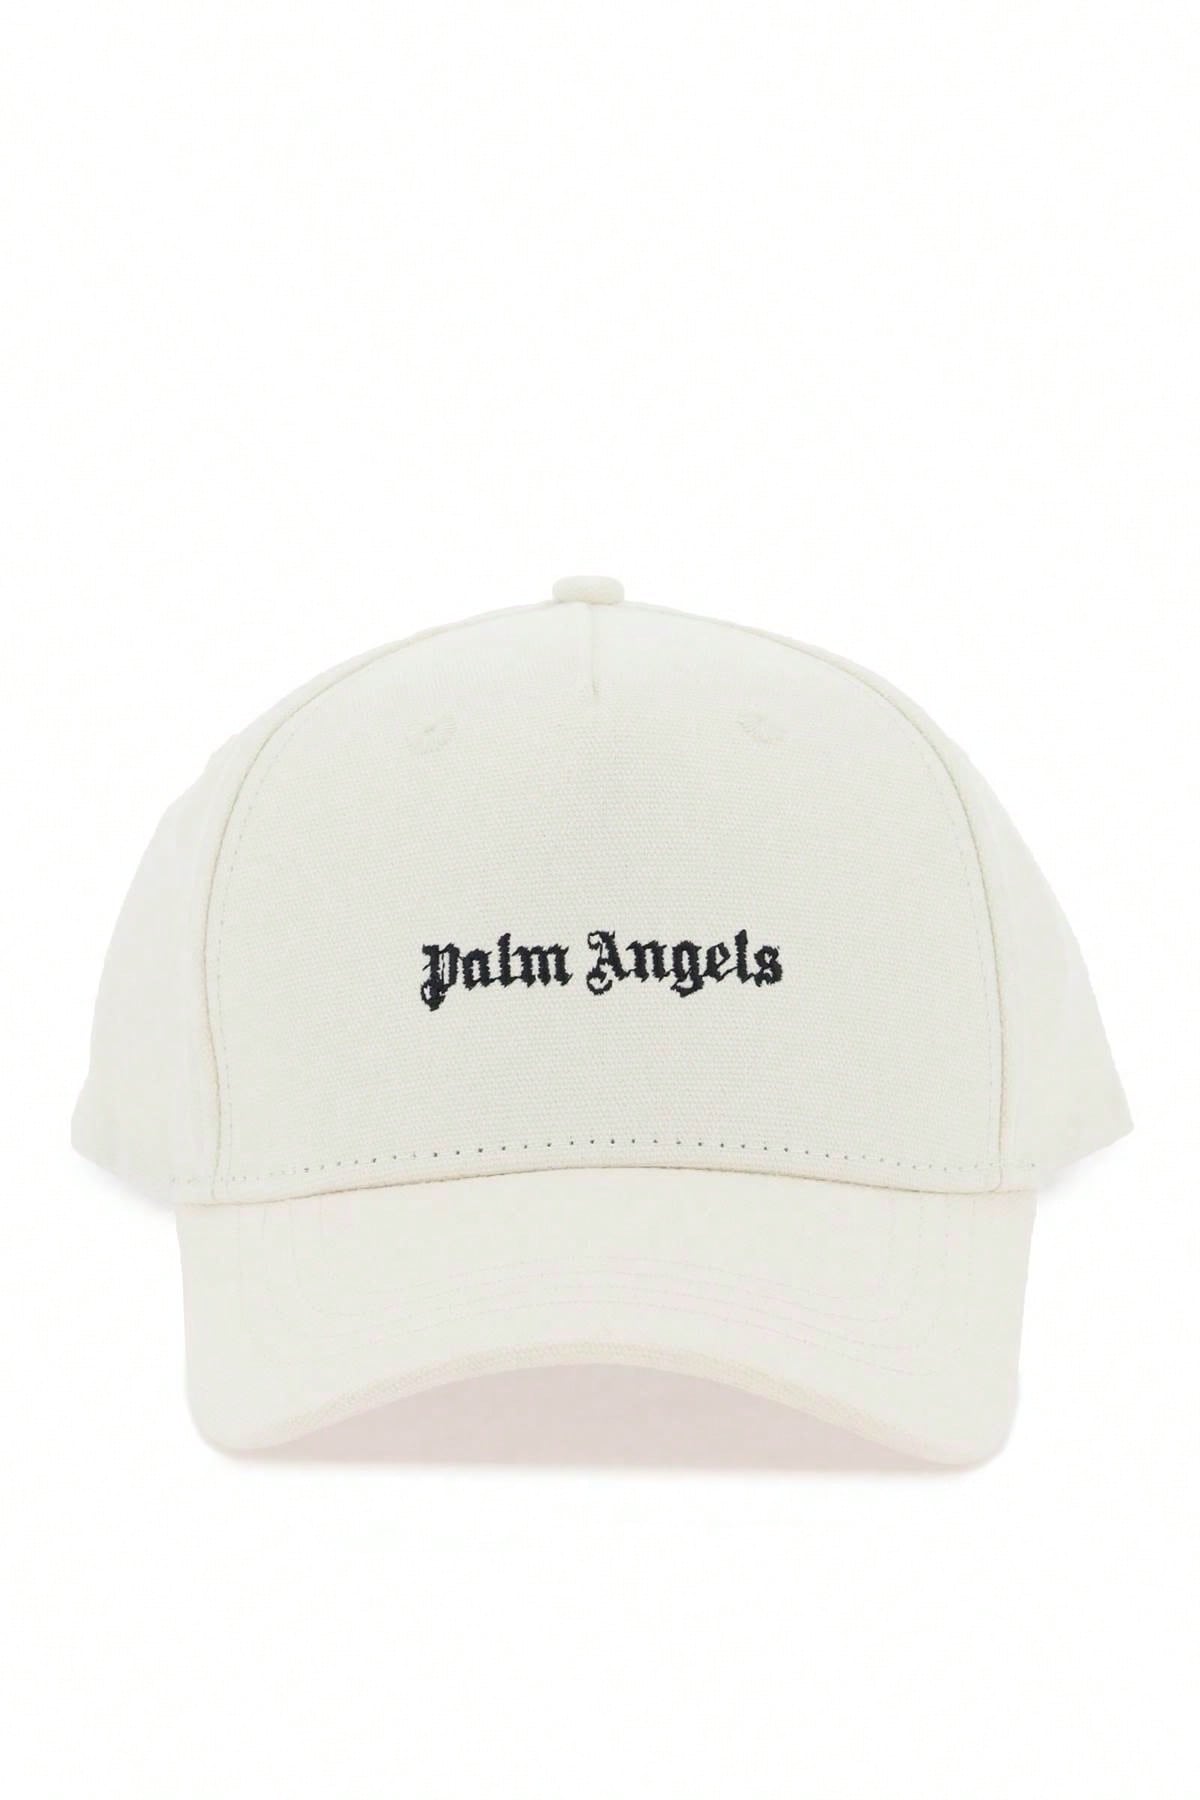 Palm Angels Бейсбольная кепка с вышивкой Palm Angels, белый